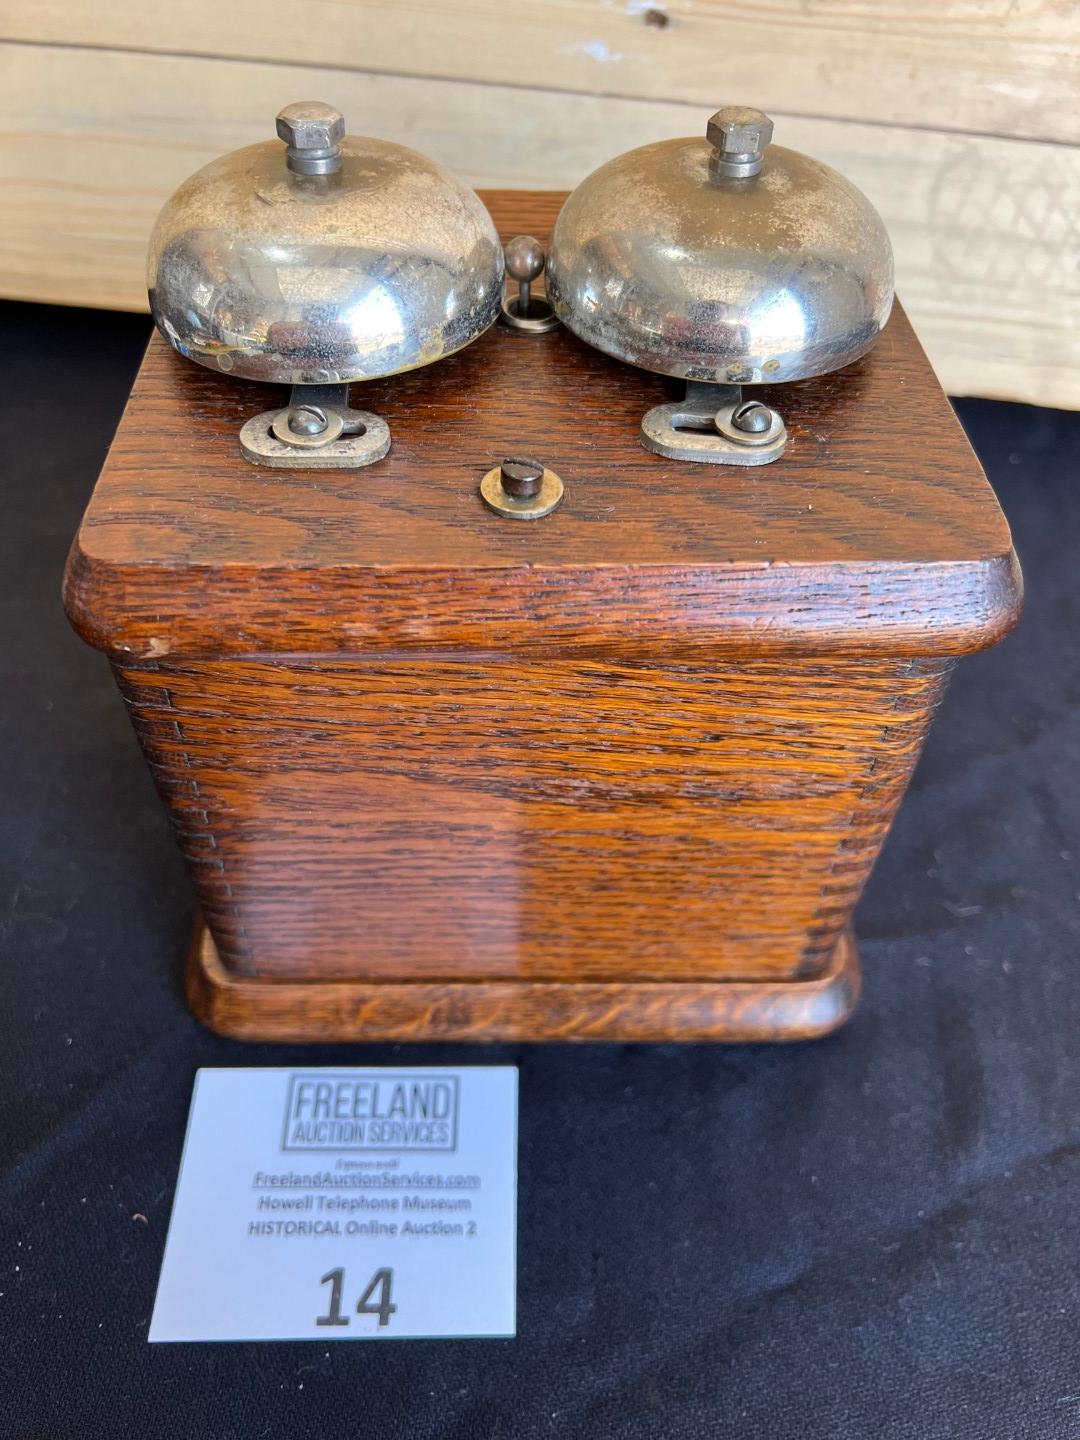 OAK Farr Telephone Co. extension ringer bell box